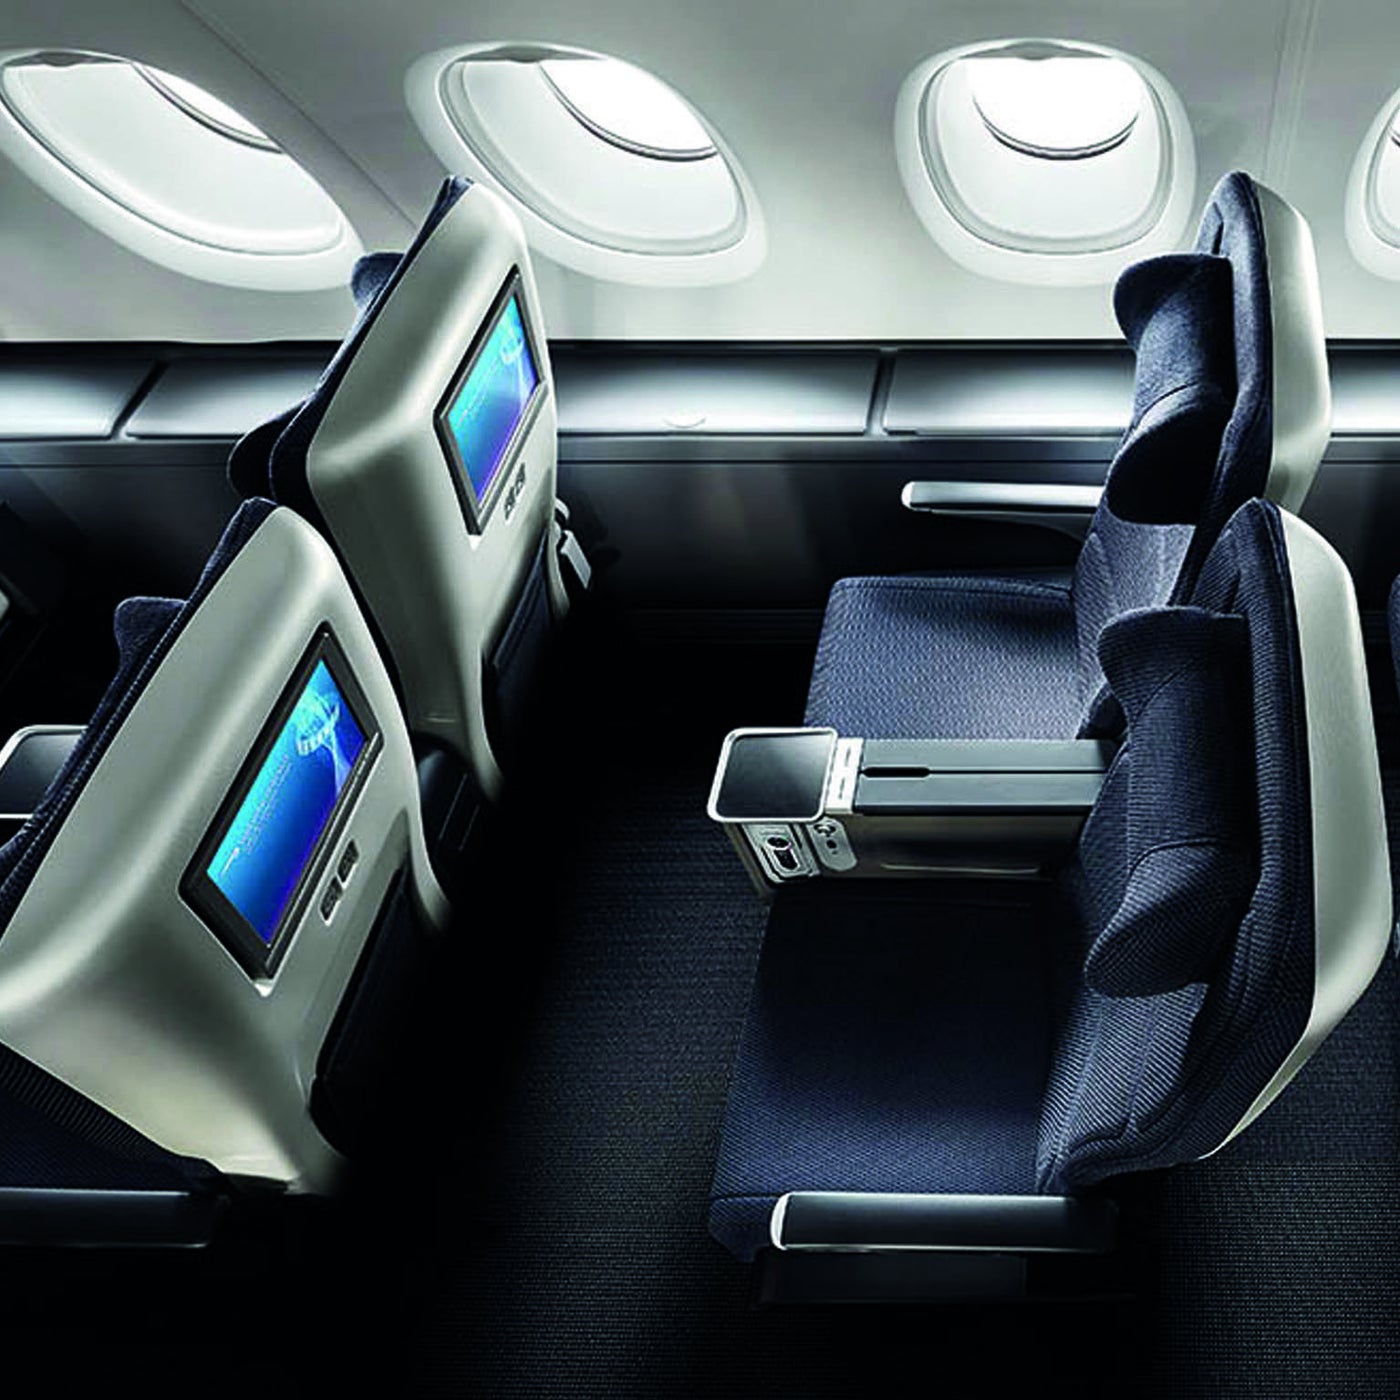 british airways world traveller seat selection